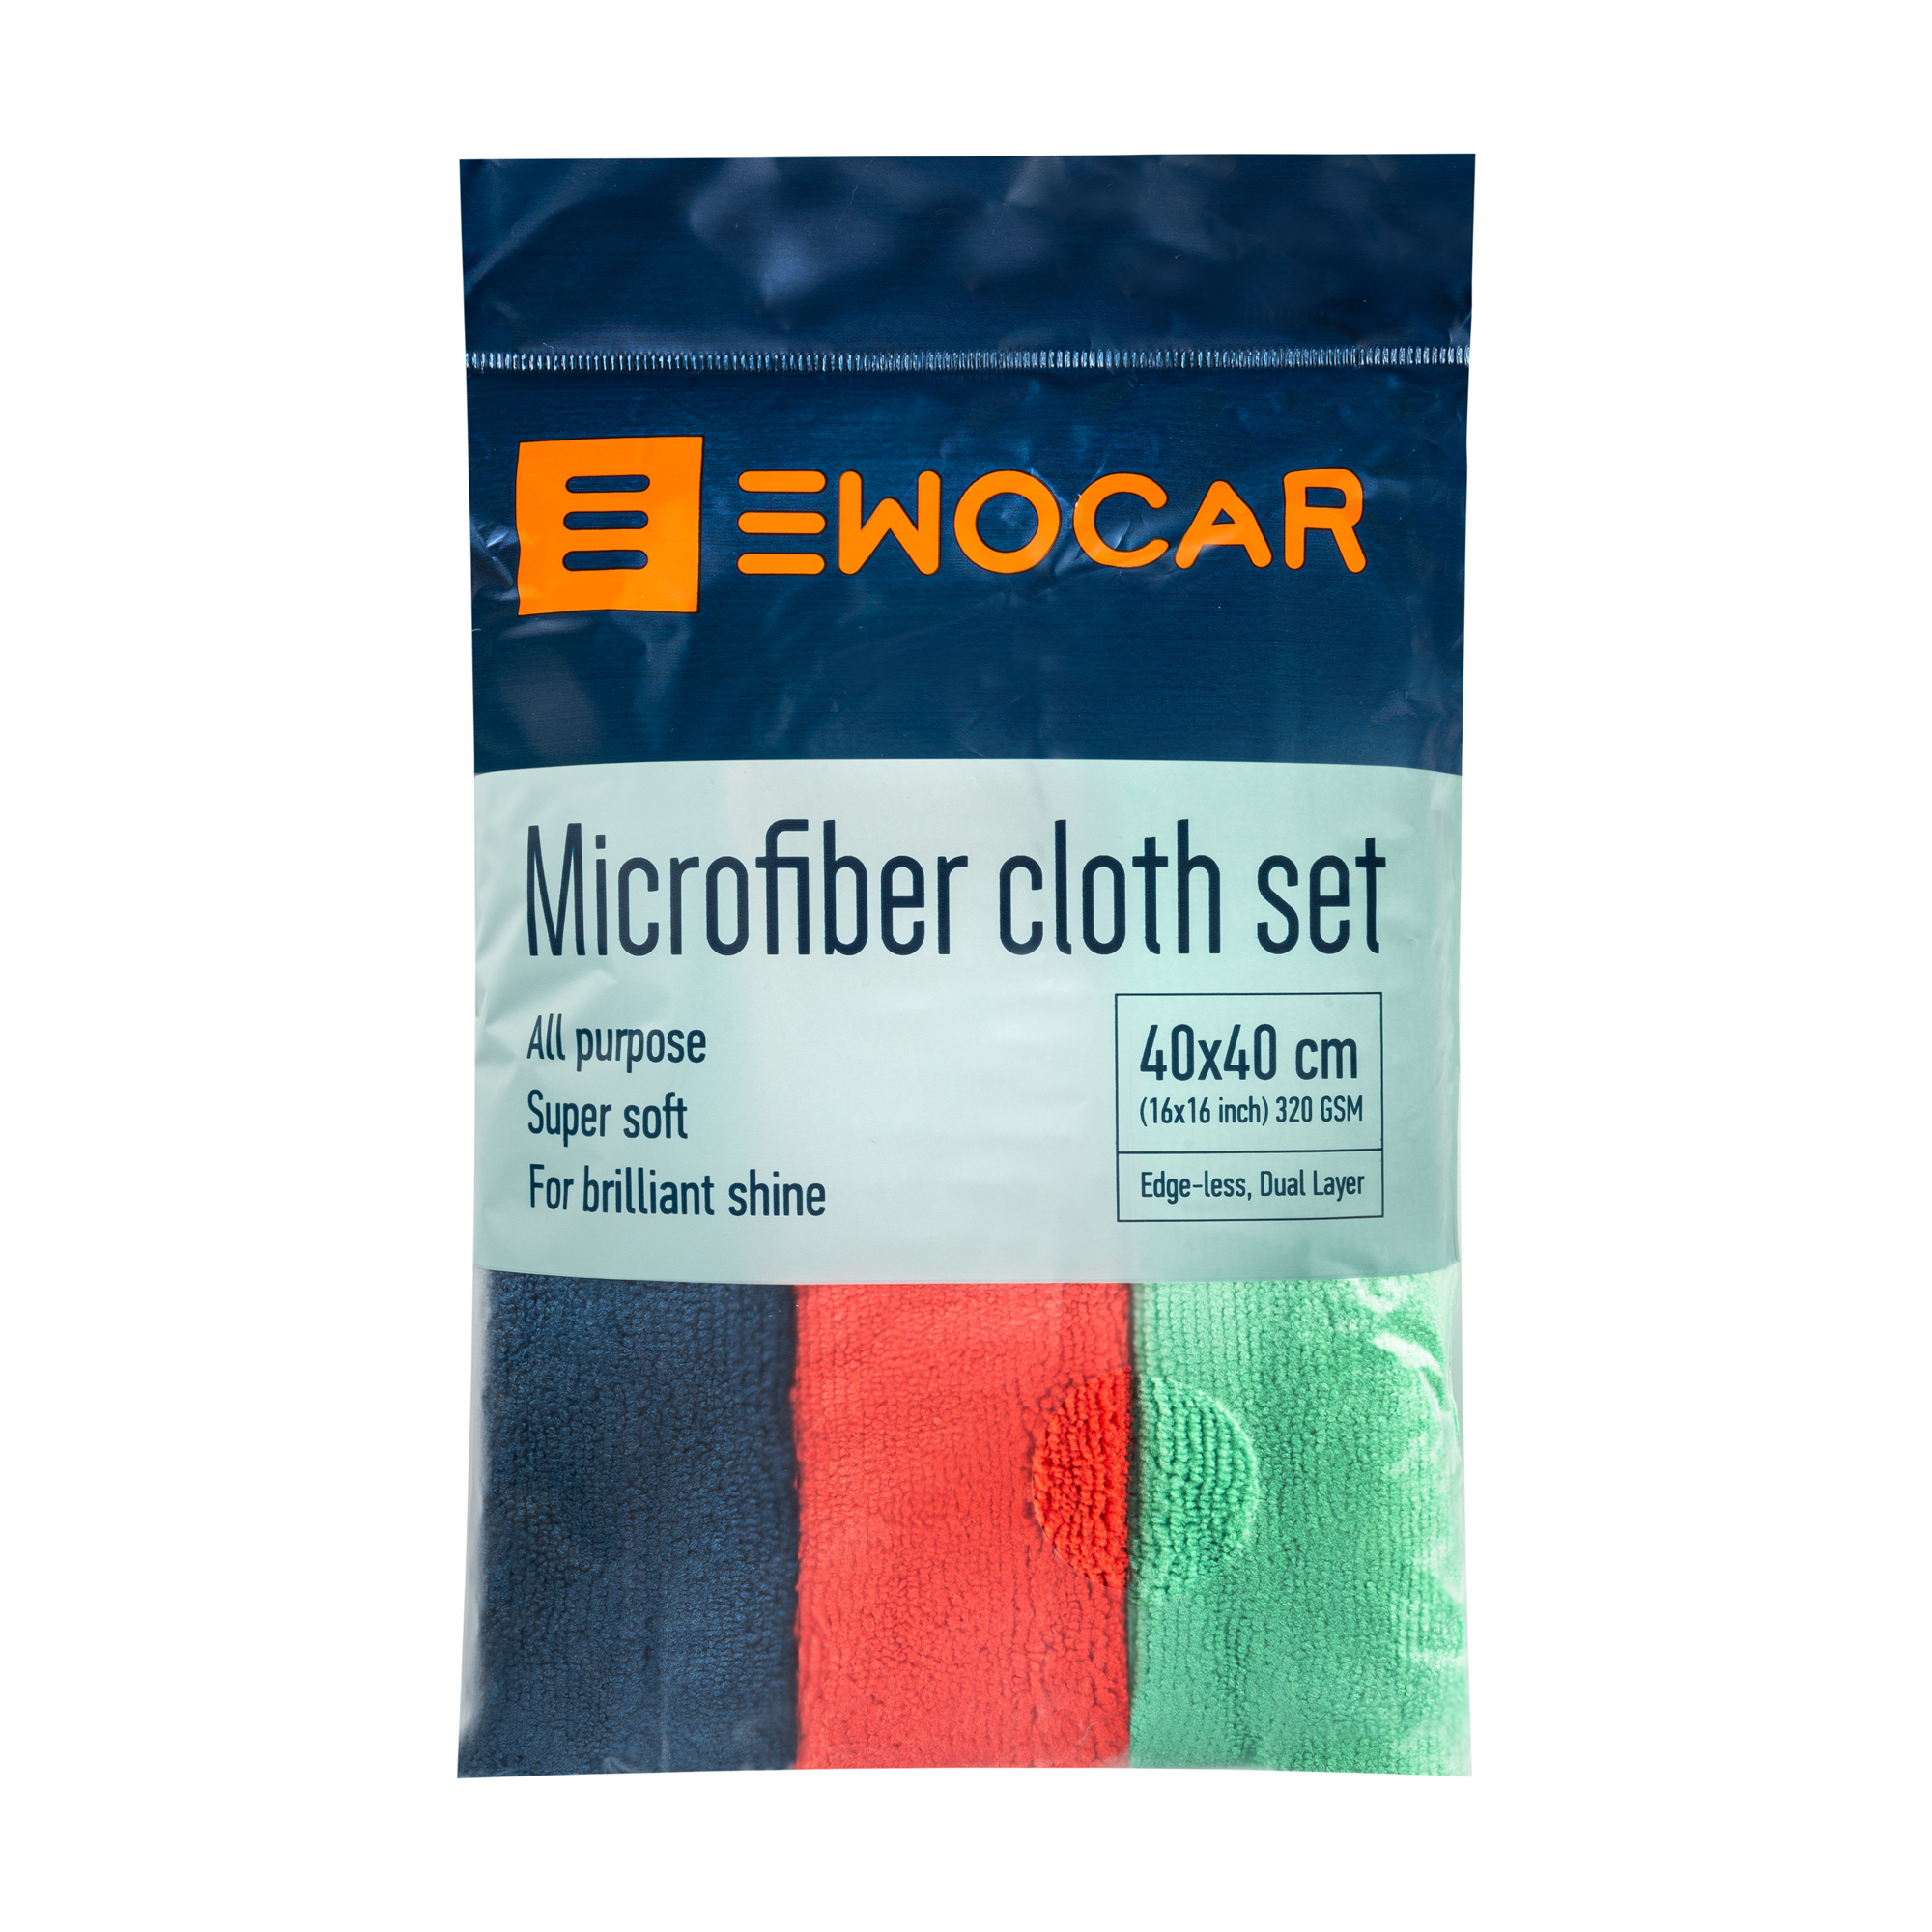 Ewocar Microfiber Super Soft Cloth Set krpa je set od 3 krpe koje učinkovito upijaju prljavštinu i besprijekorno čiste površinu bez ostavljanja tragova, mrlja ili ogrebotina, osiguravajući zaštitu Vašeg vozila.